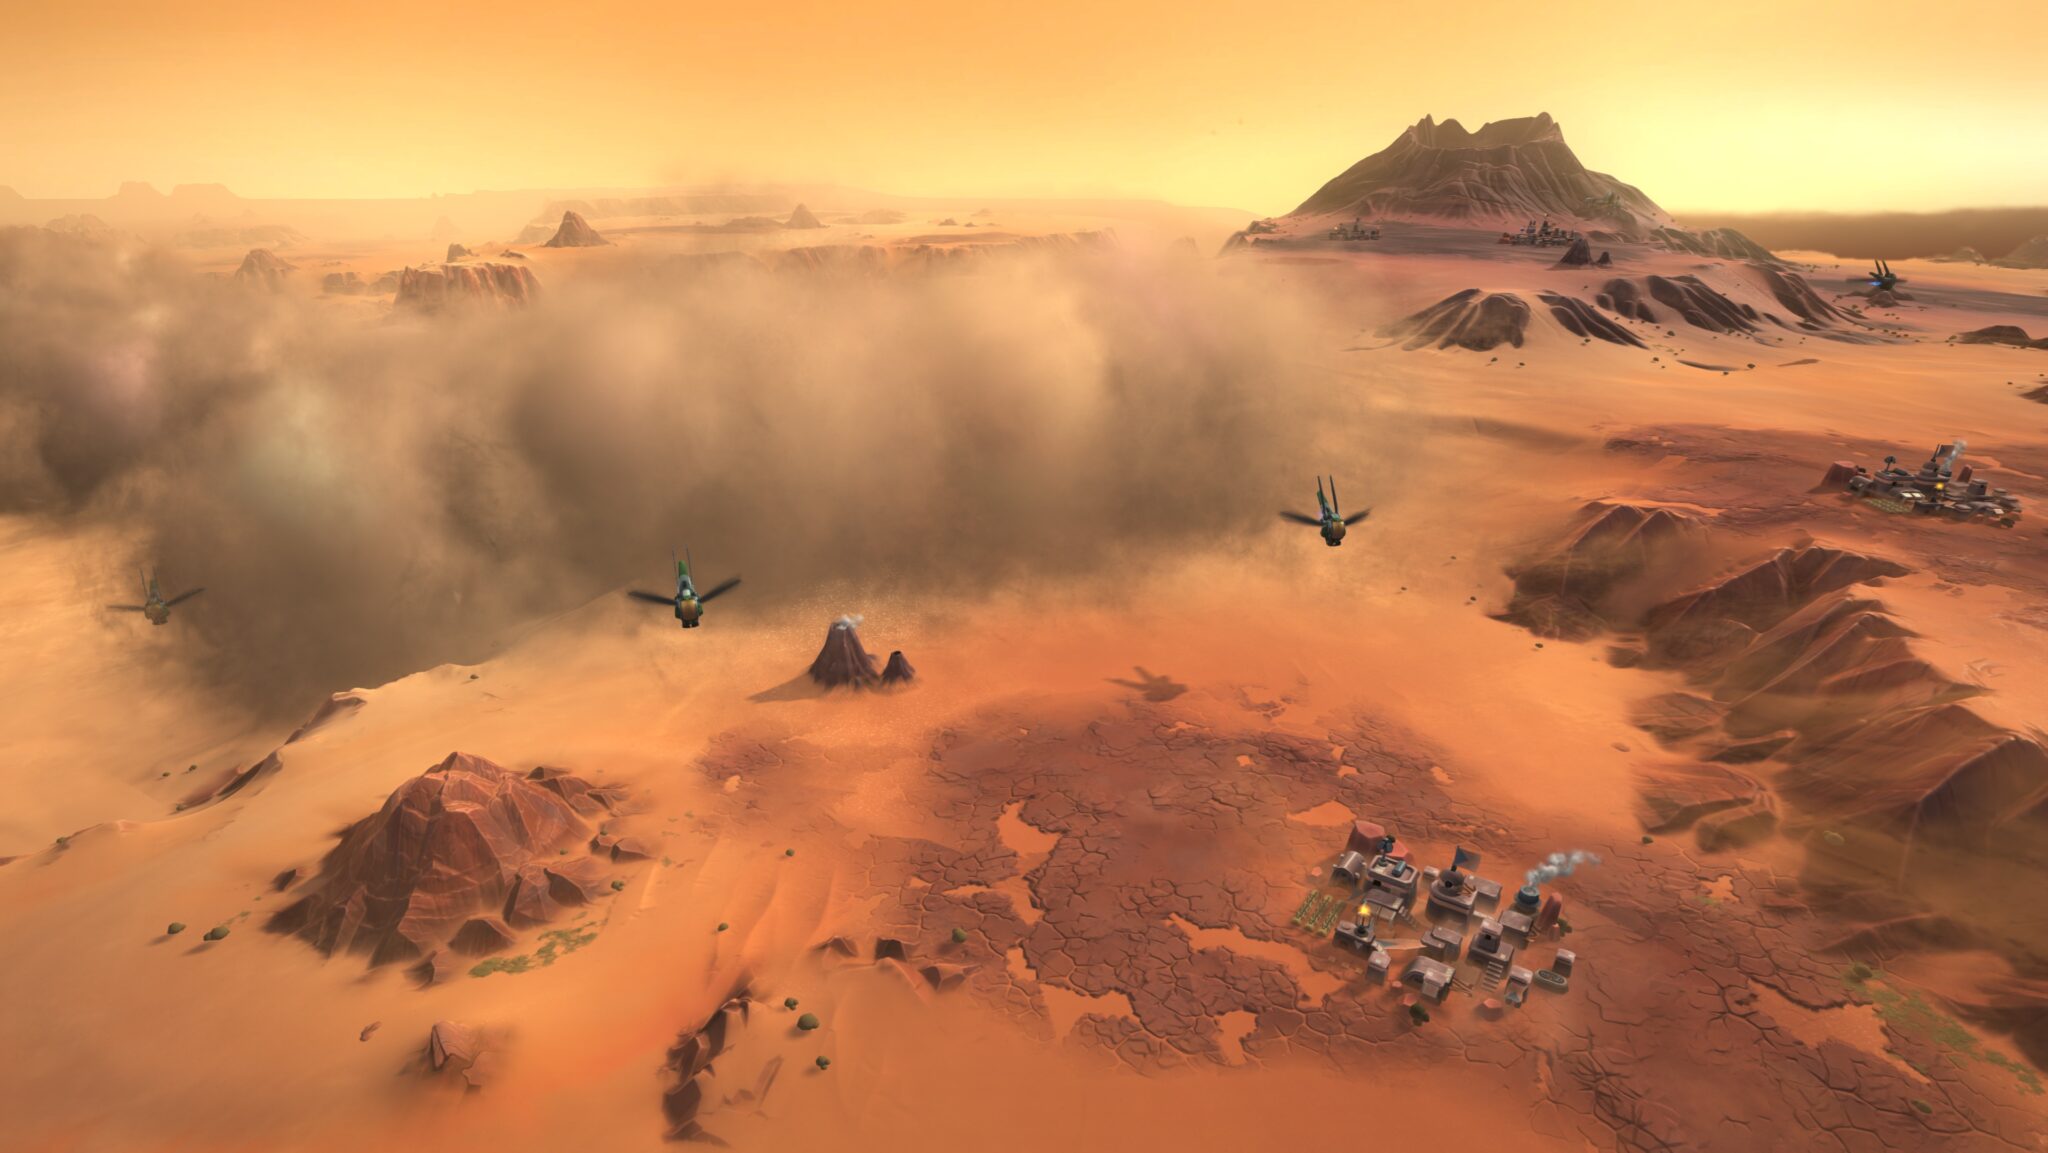 Laten we woestijnkracht cultiveren! In Dune: Spice Wars, vechten adellijke families om de zandigste planeet in het universum.